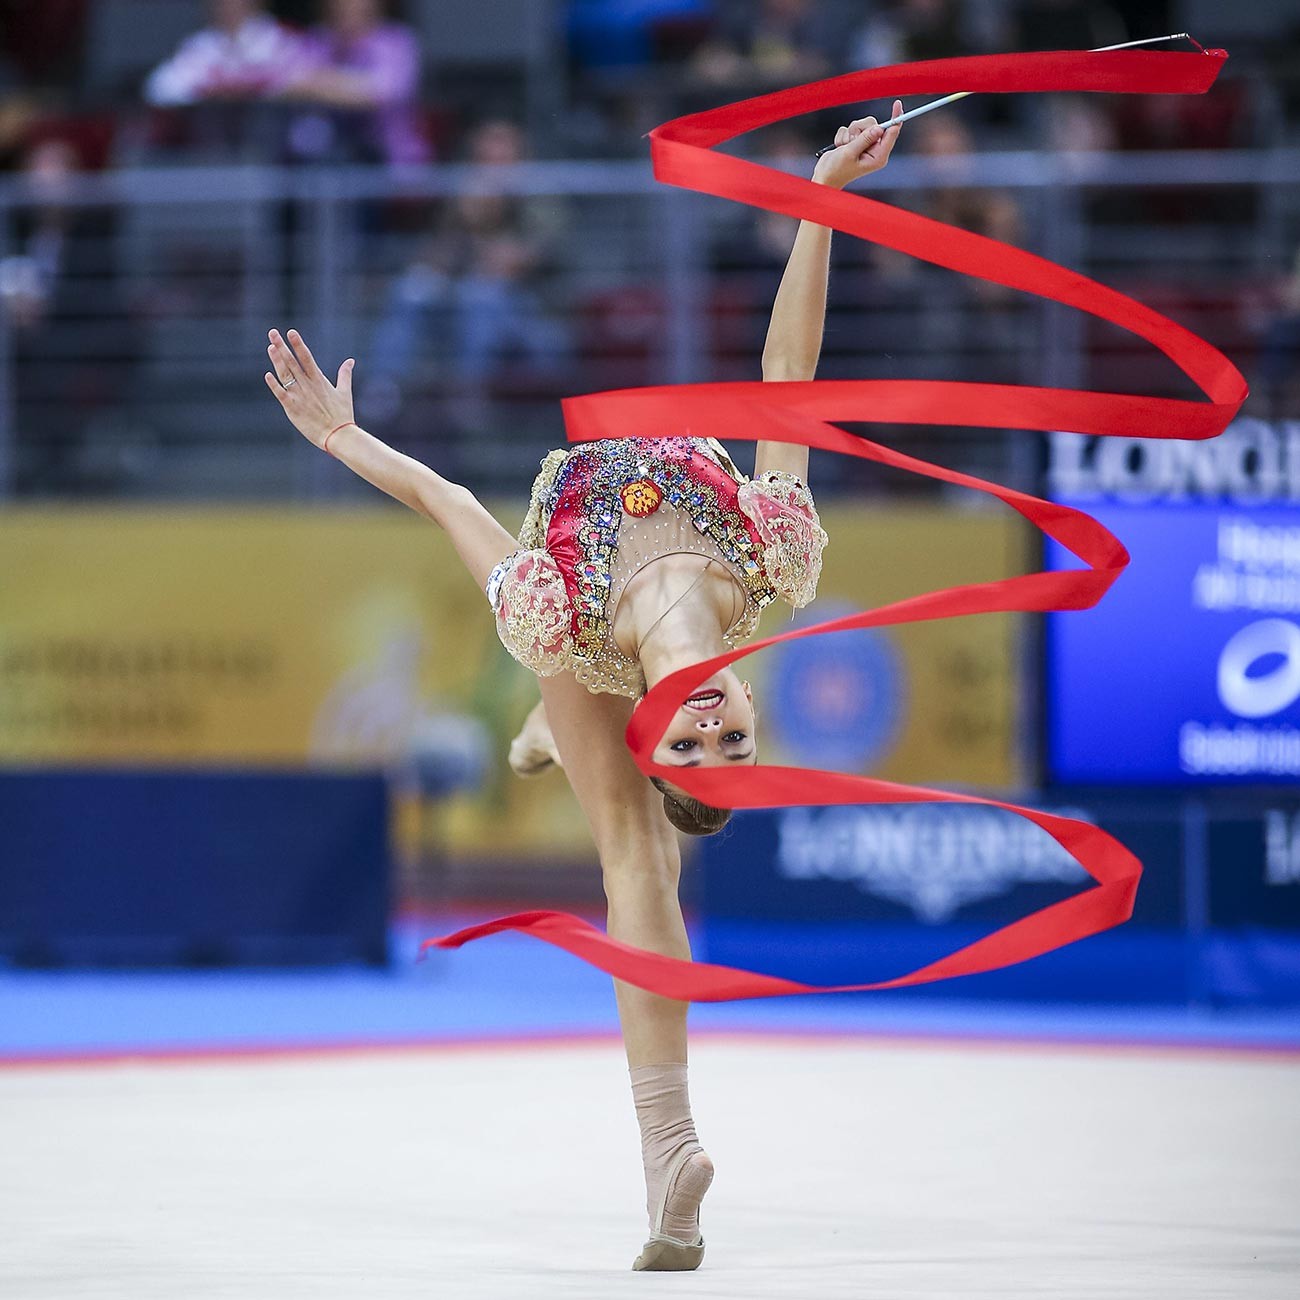 世界でもっとも多くのタイトルを手にしている双子の新体操選手 アヴェリナ姉妹 写真特集 ロシア ビヨンド